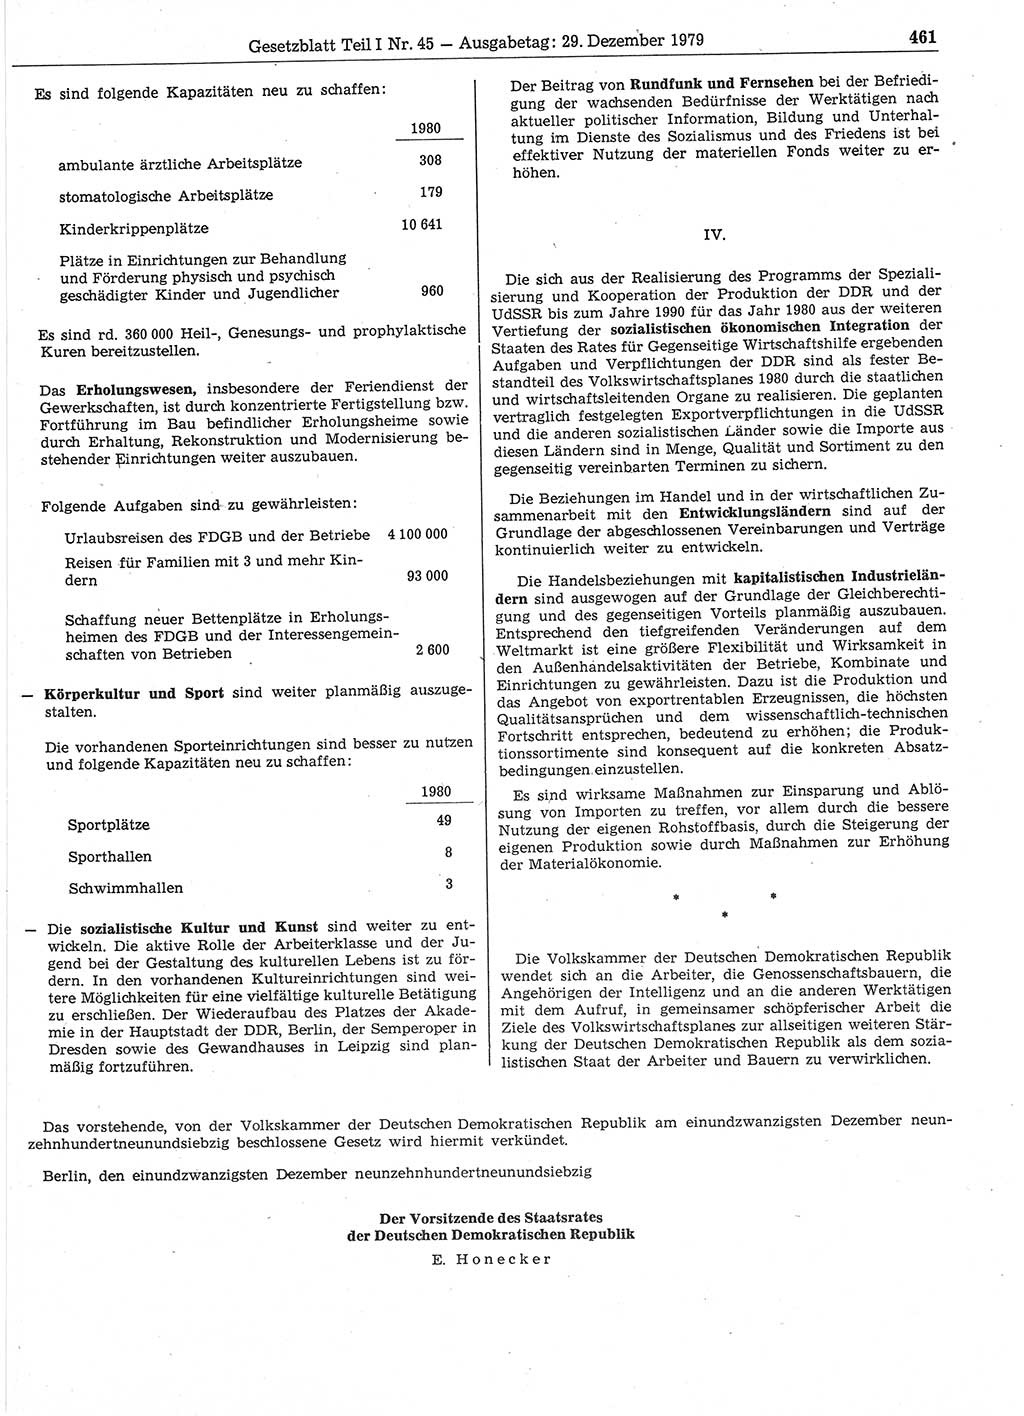 Gesetzblatt (GBl.) der Deutschen Demokratischen Republik (DDR) Teil Ⅰ 1979, Seite 461 (GBl. DDR Ⅰ 1979, S. 461)